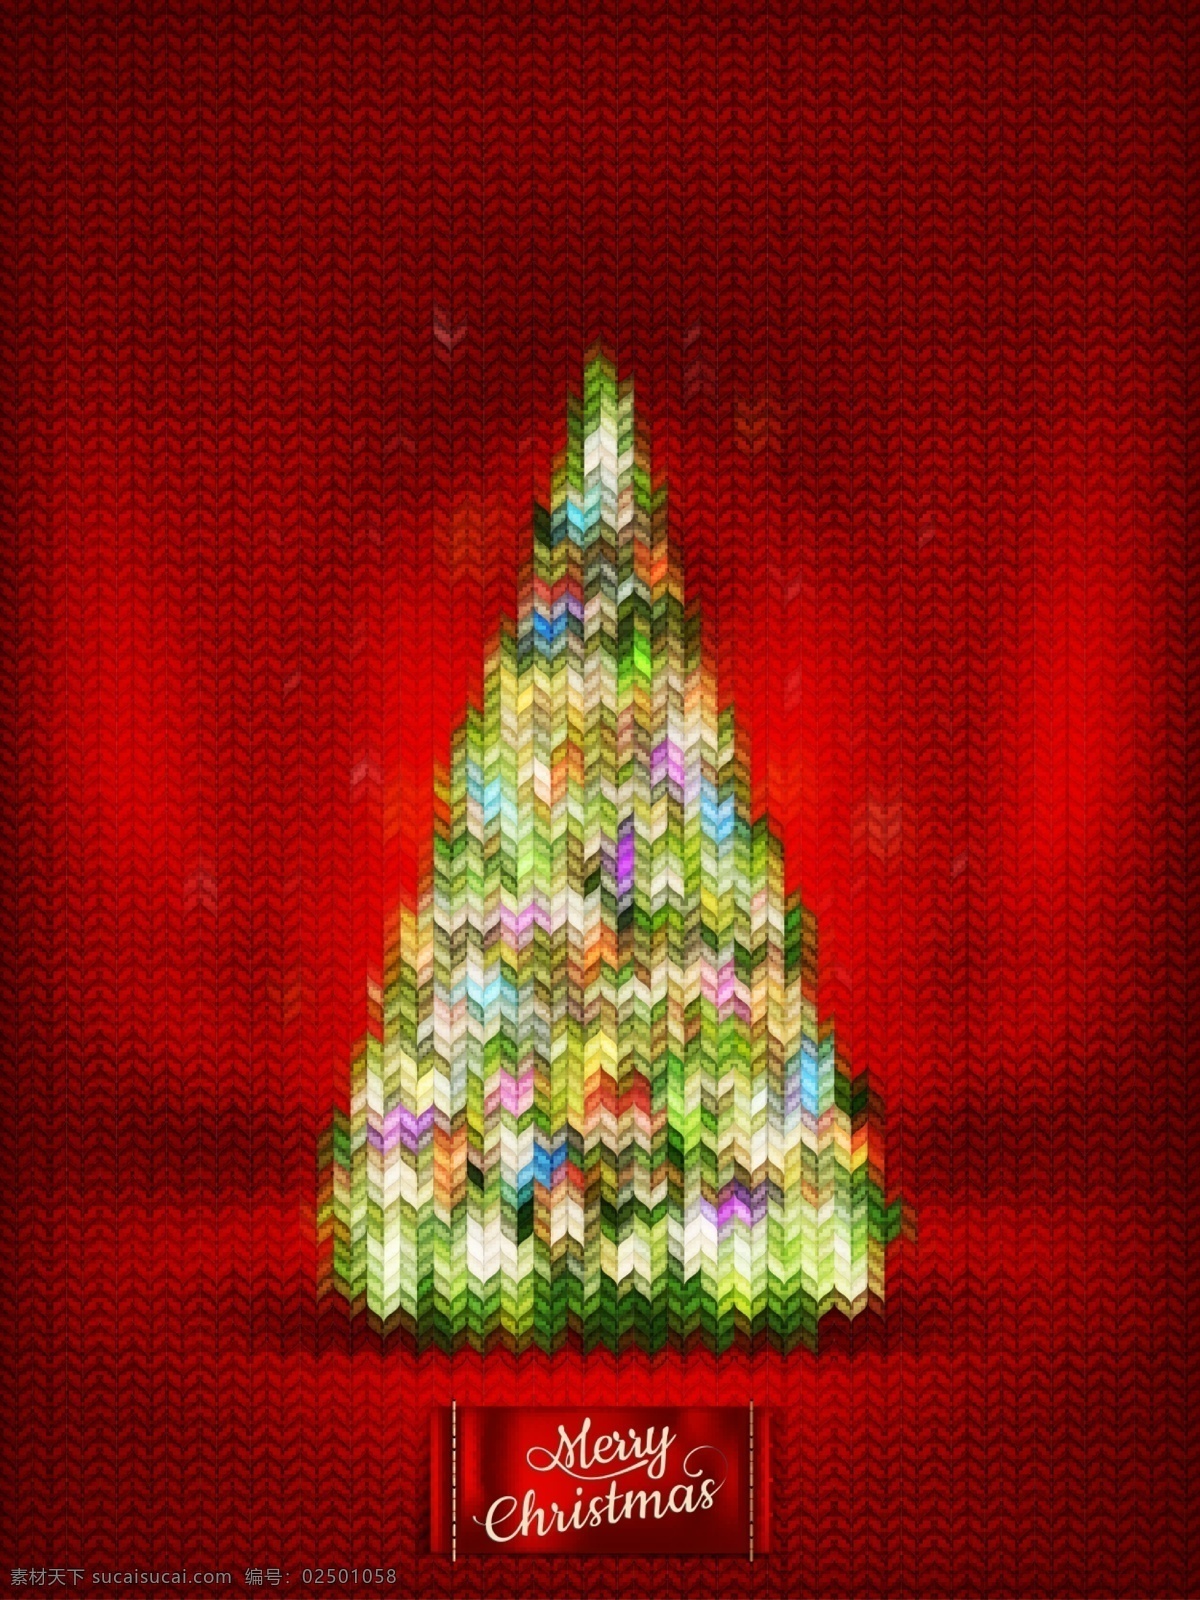 抽象 霓虹 针织 圣诞树 圣诞节 矢量图 霓虹色 节日素材